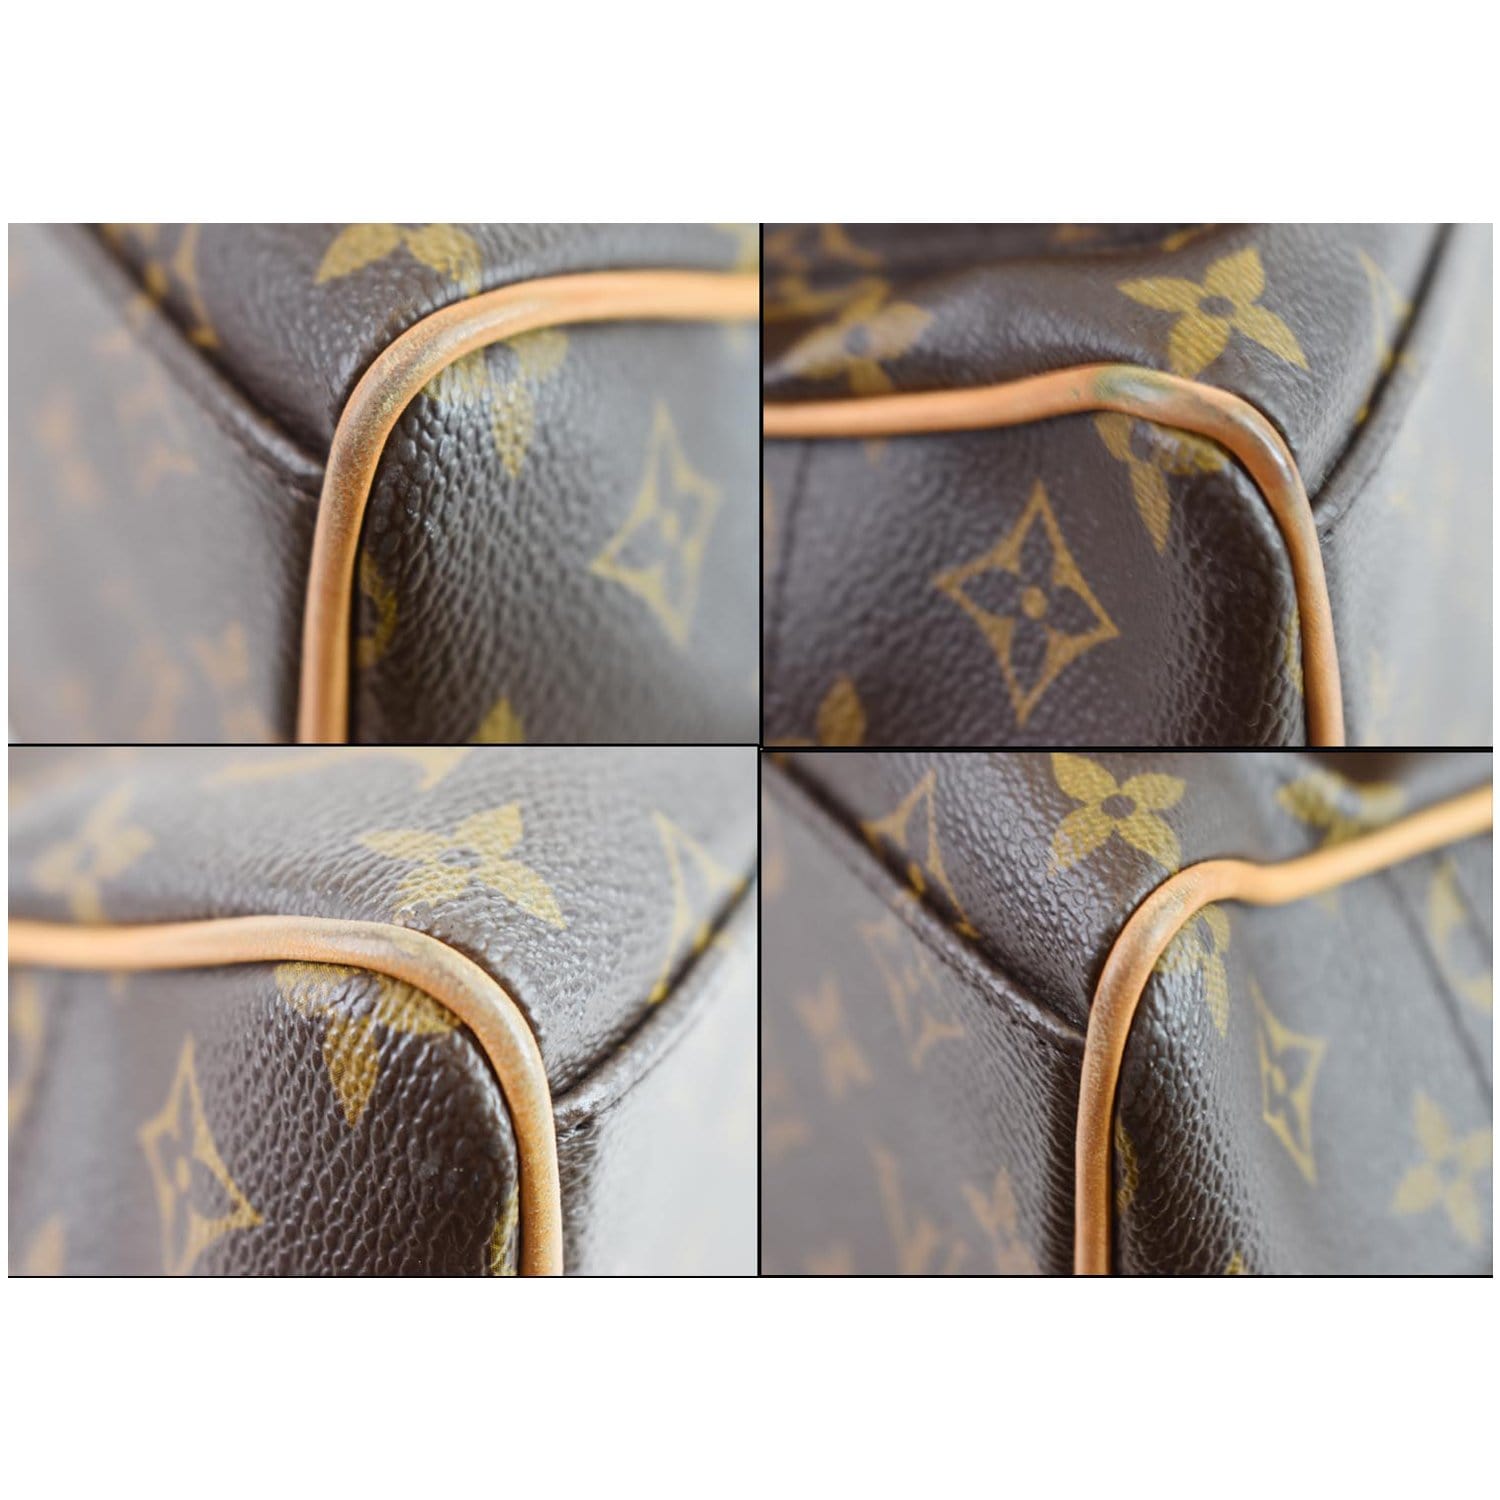 Manhattan cloth handbag Louis Vuitton Brown in Cloth - 33172715